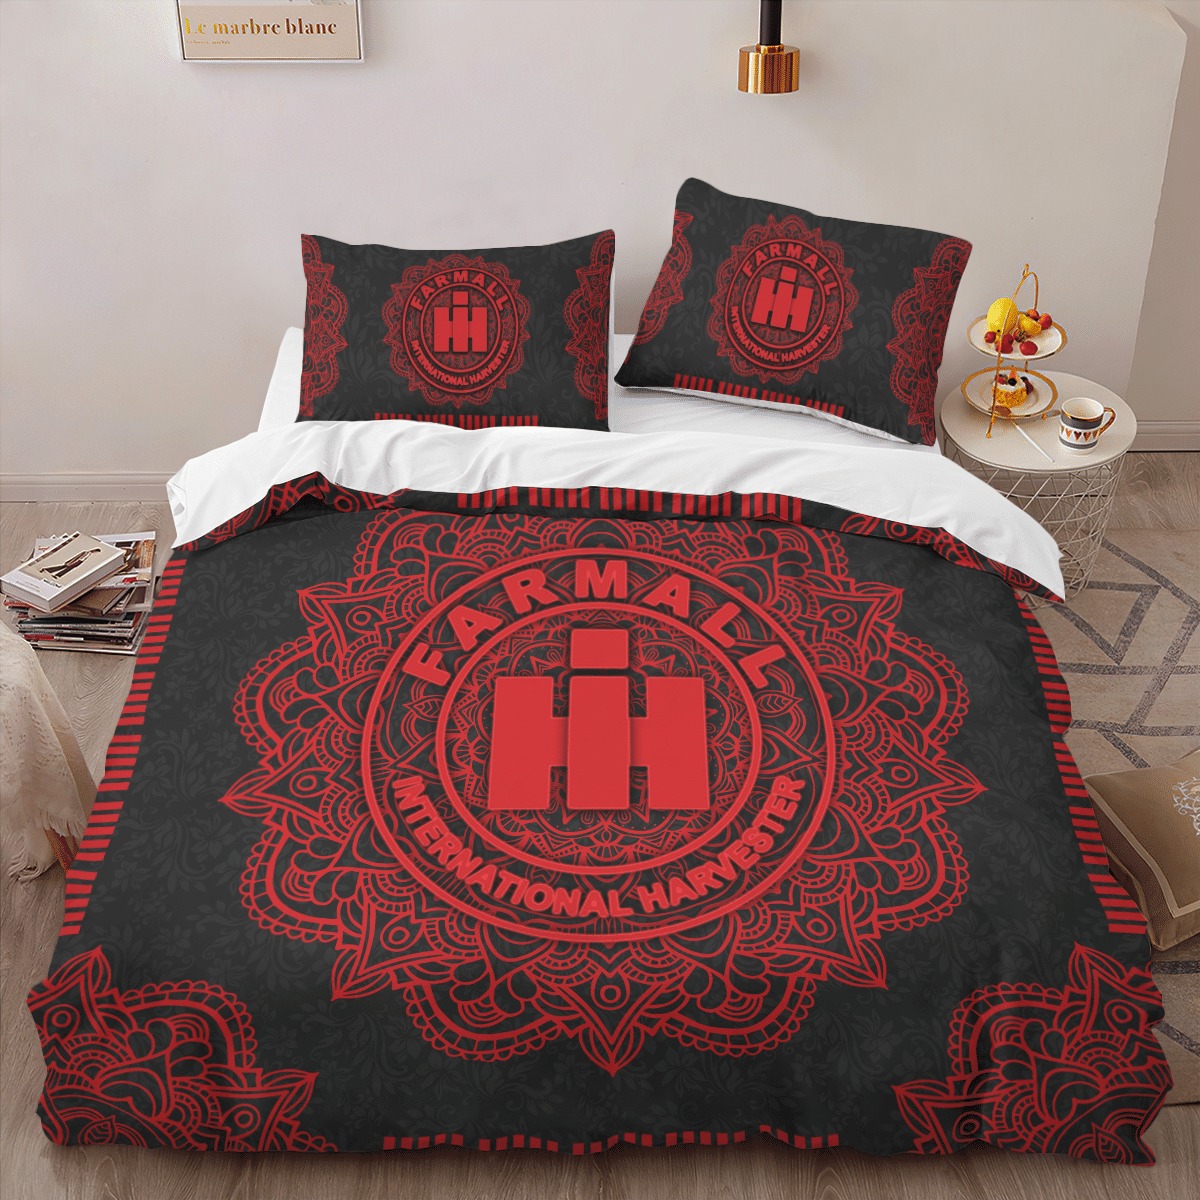 Farmall International Harvester IH Mandala quilt bedding set 9